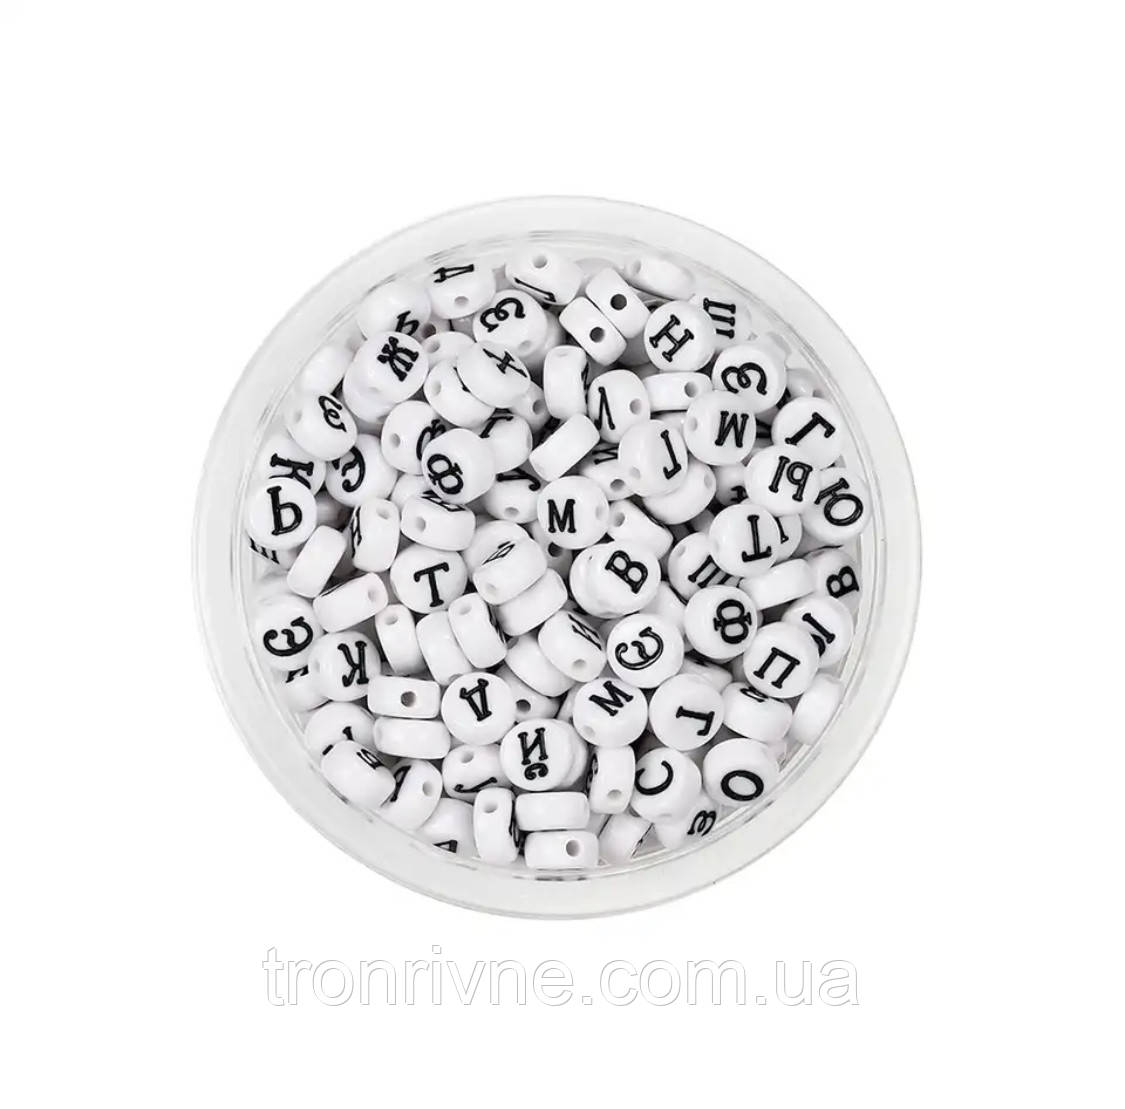 Намистини пластикові круглі 6х6 мм алфавіт чорно-білий кирилиця (в уп. 10 шт)